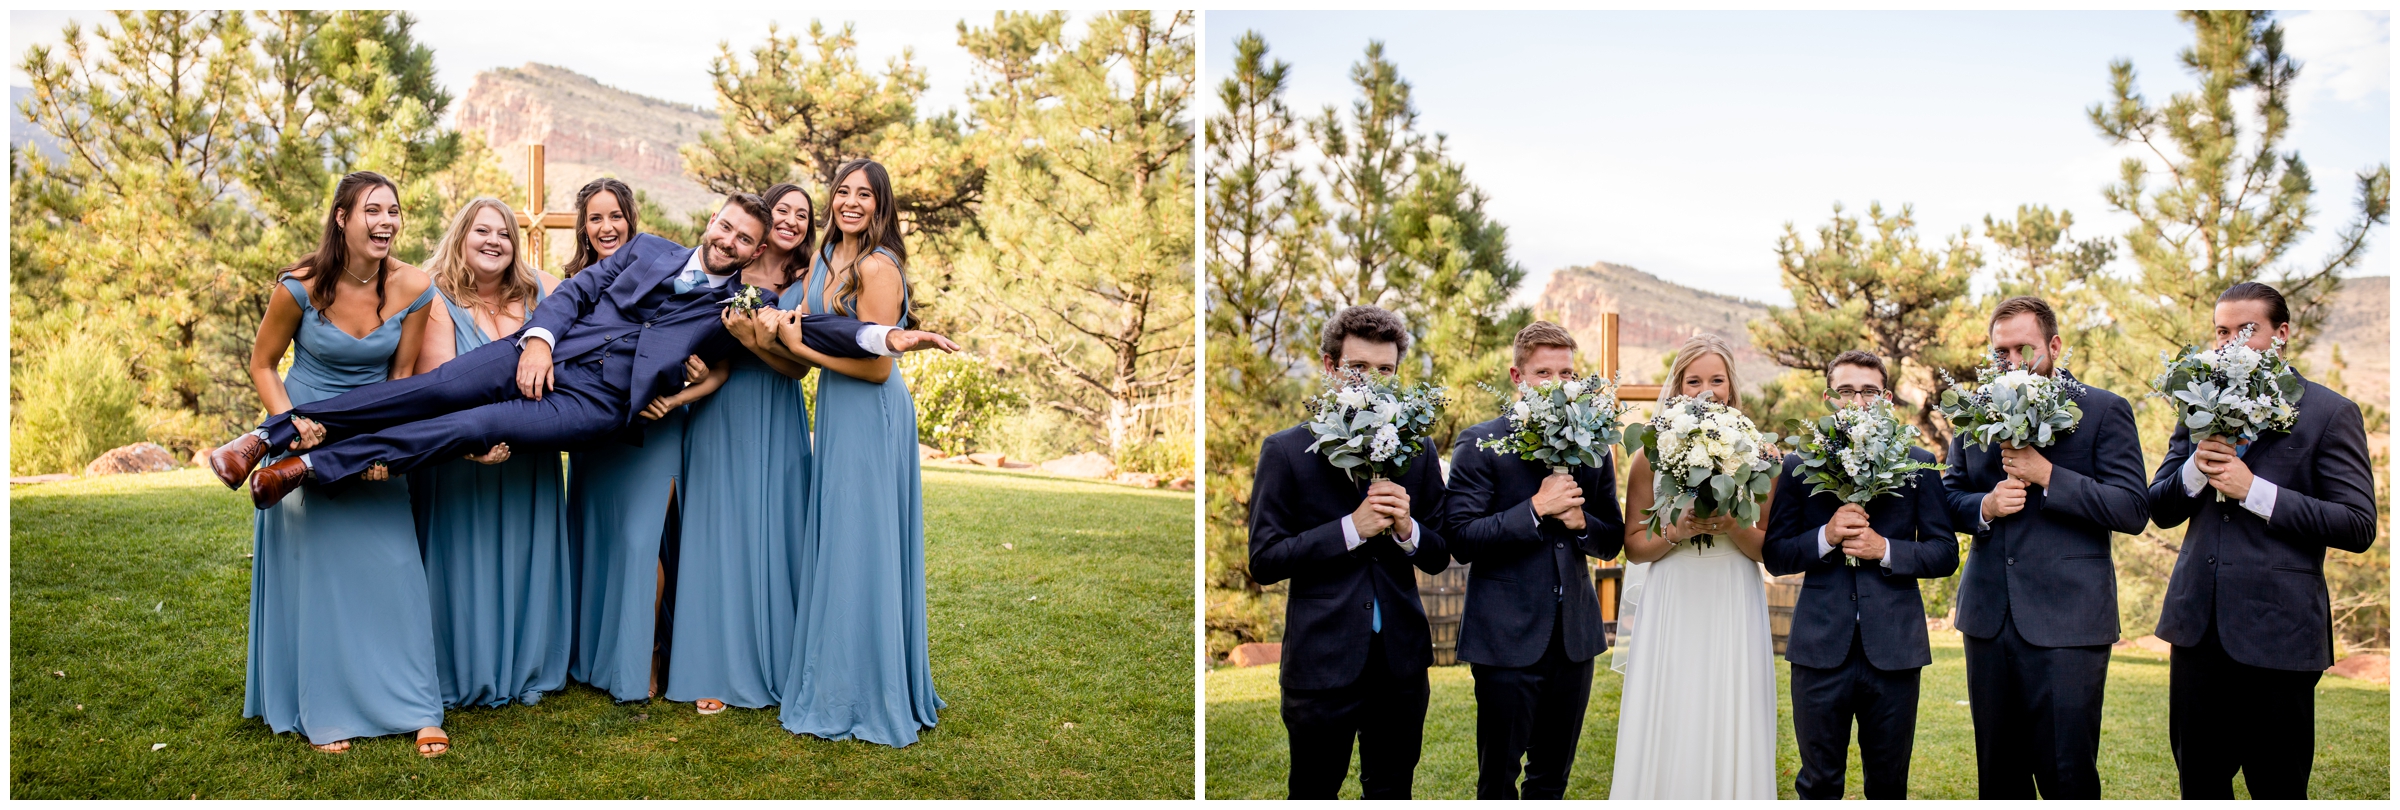 unique bridal party portraits by Colorado photographer Plum Pretty Photography